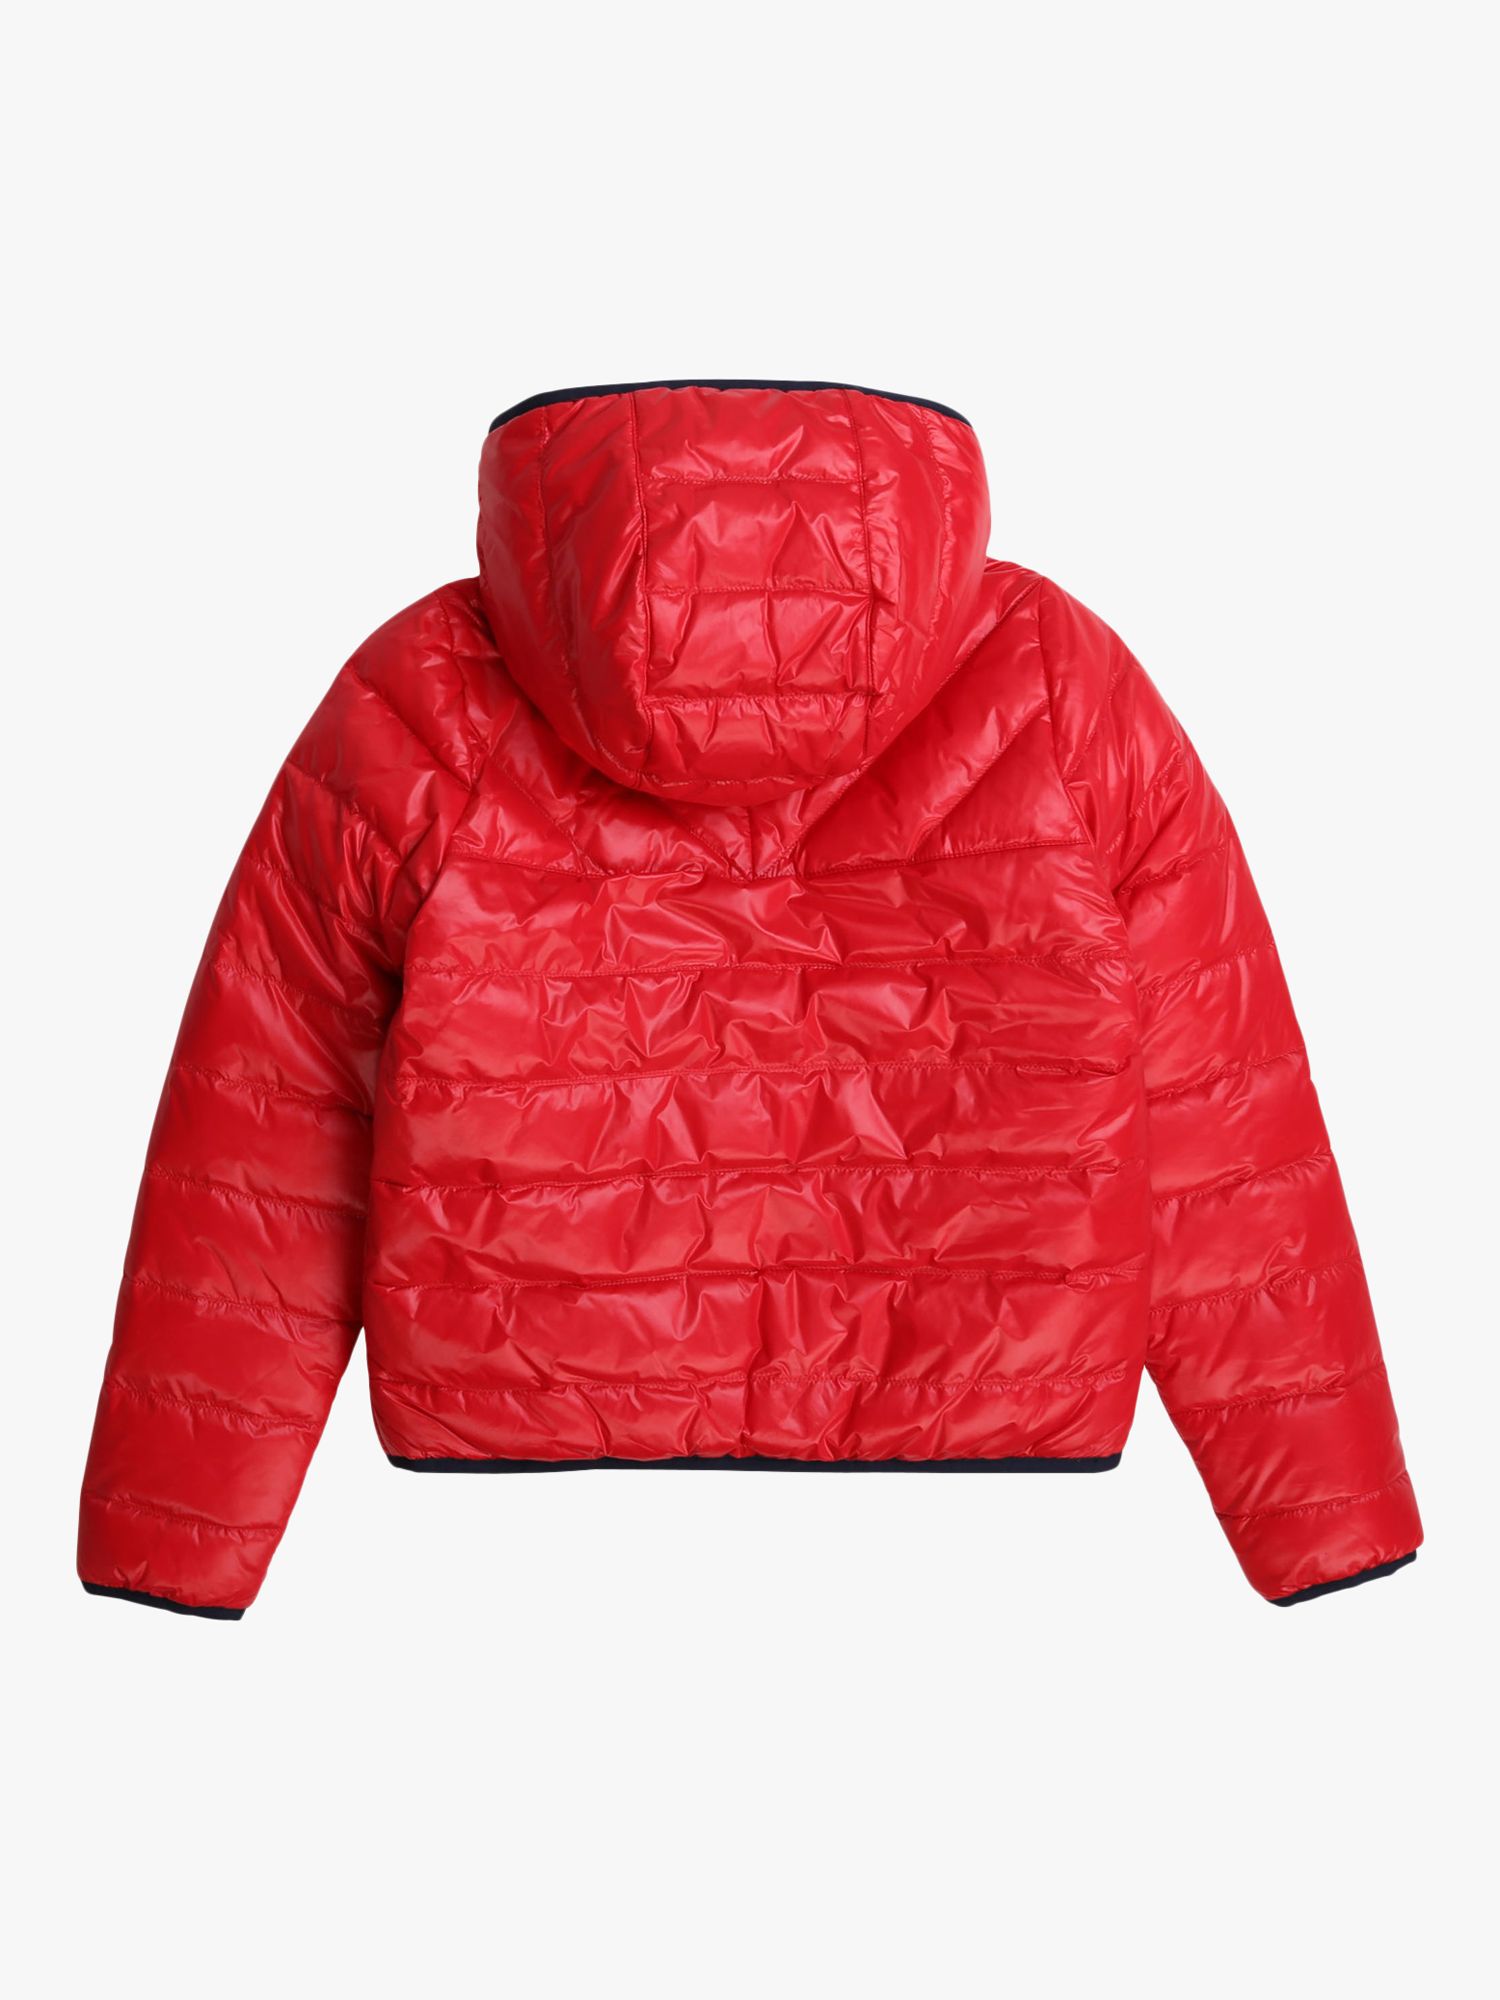 HUGO BOSS Boys' Reversible Puffer Jacket, Red/Navy